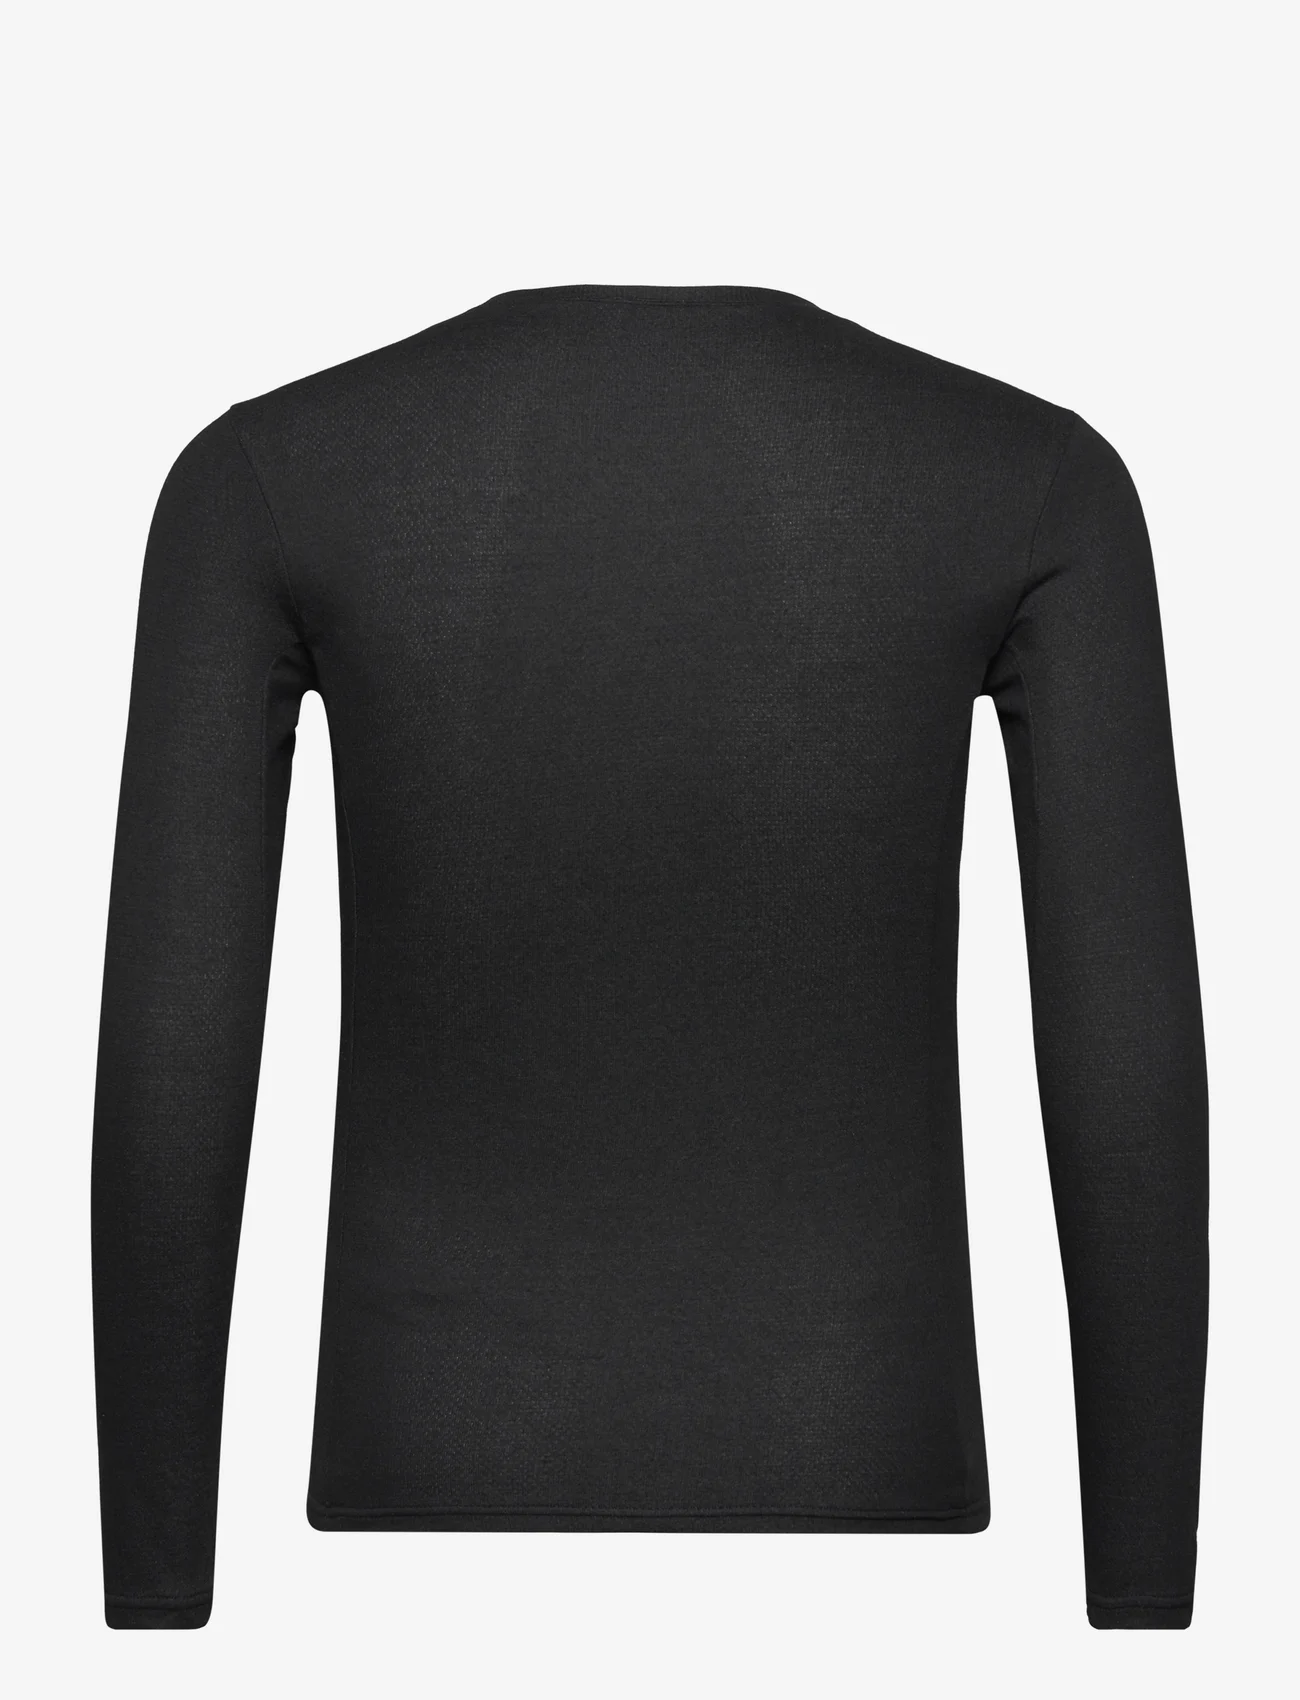 The North Face - M EASY L/S CREW NECK - basic skjorter - tnf black - 1